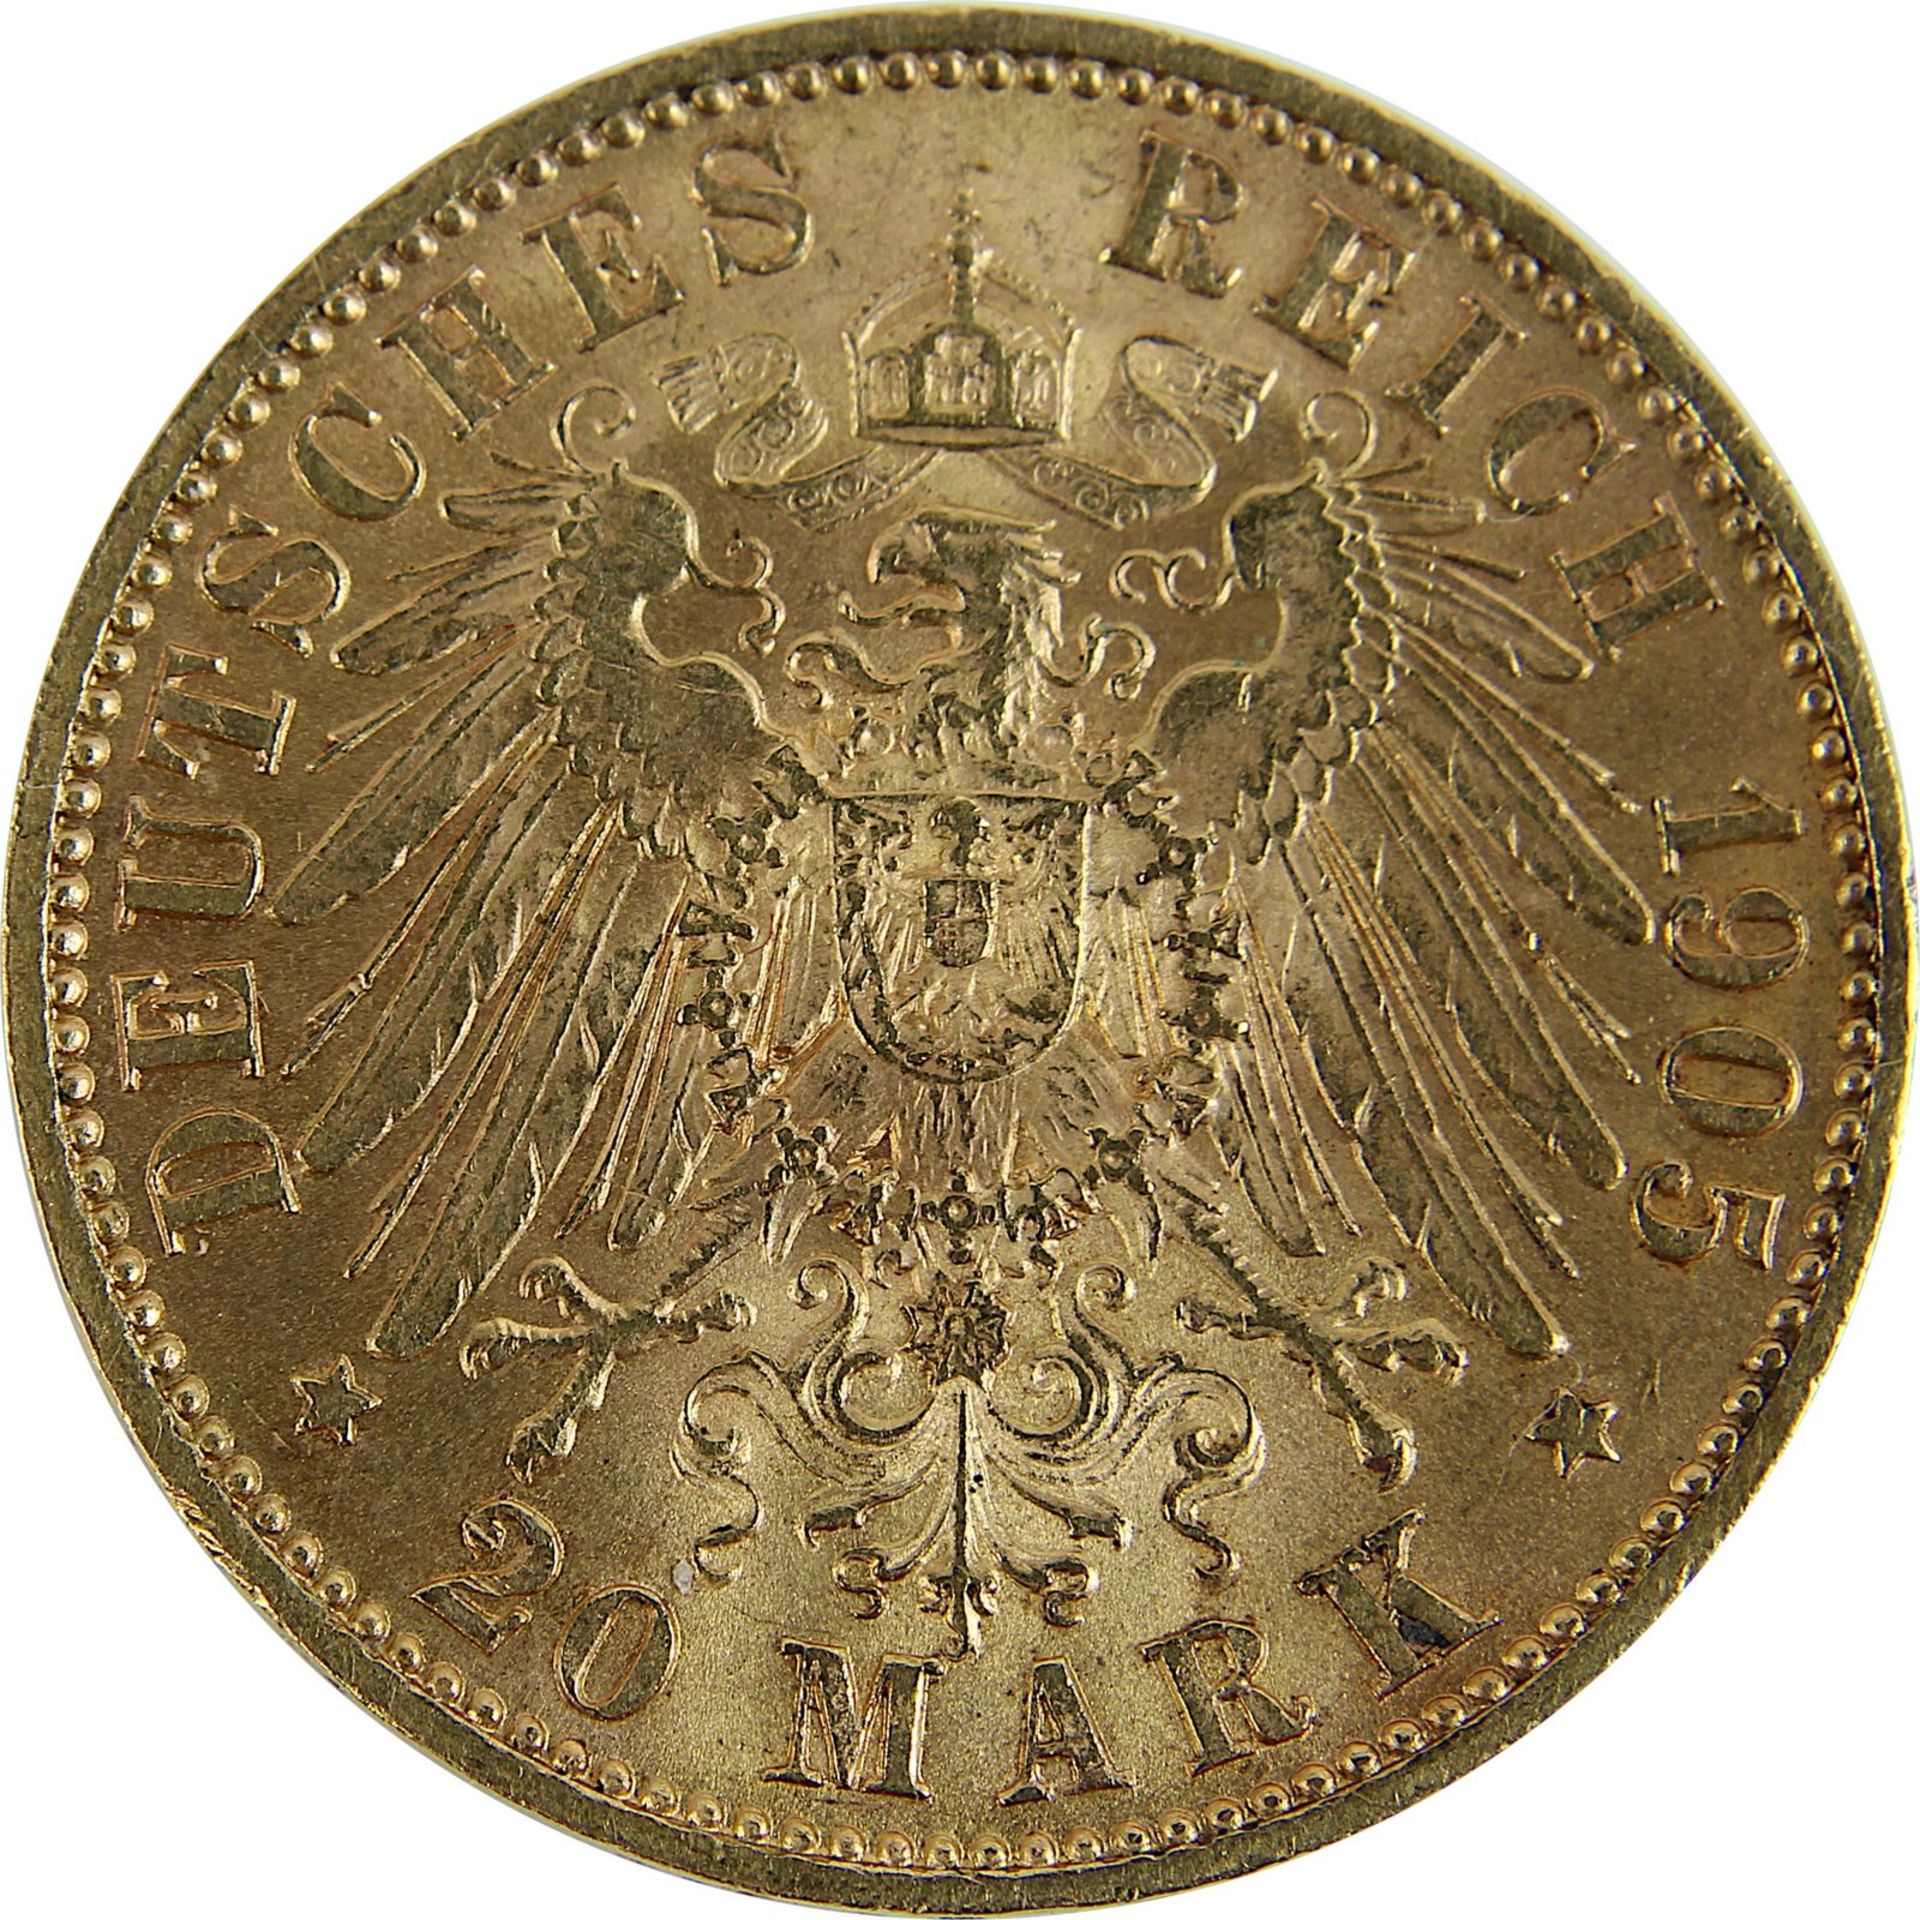 Goldmünze zu 20 Mark, Sachsen - Deutsches Reich 1905, Avers: Kopf Friedrich August von Sachsen - Image 3 of 3